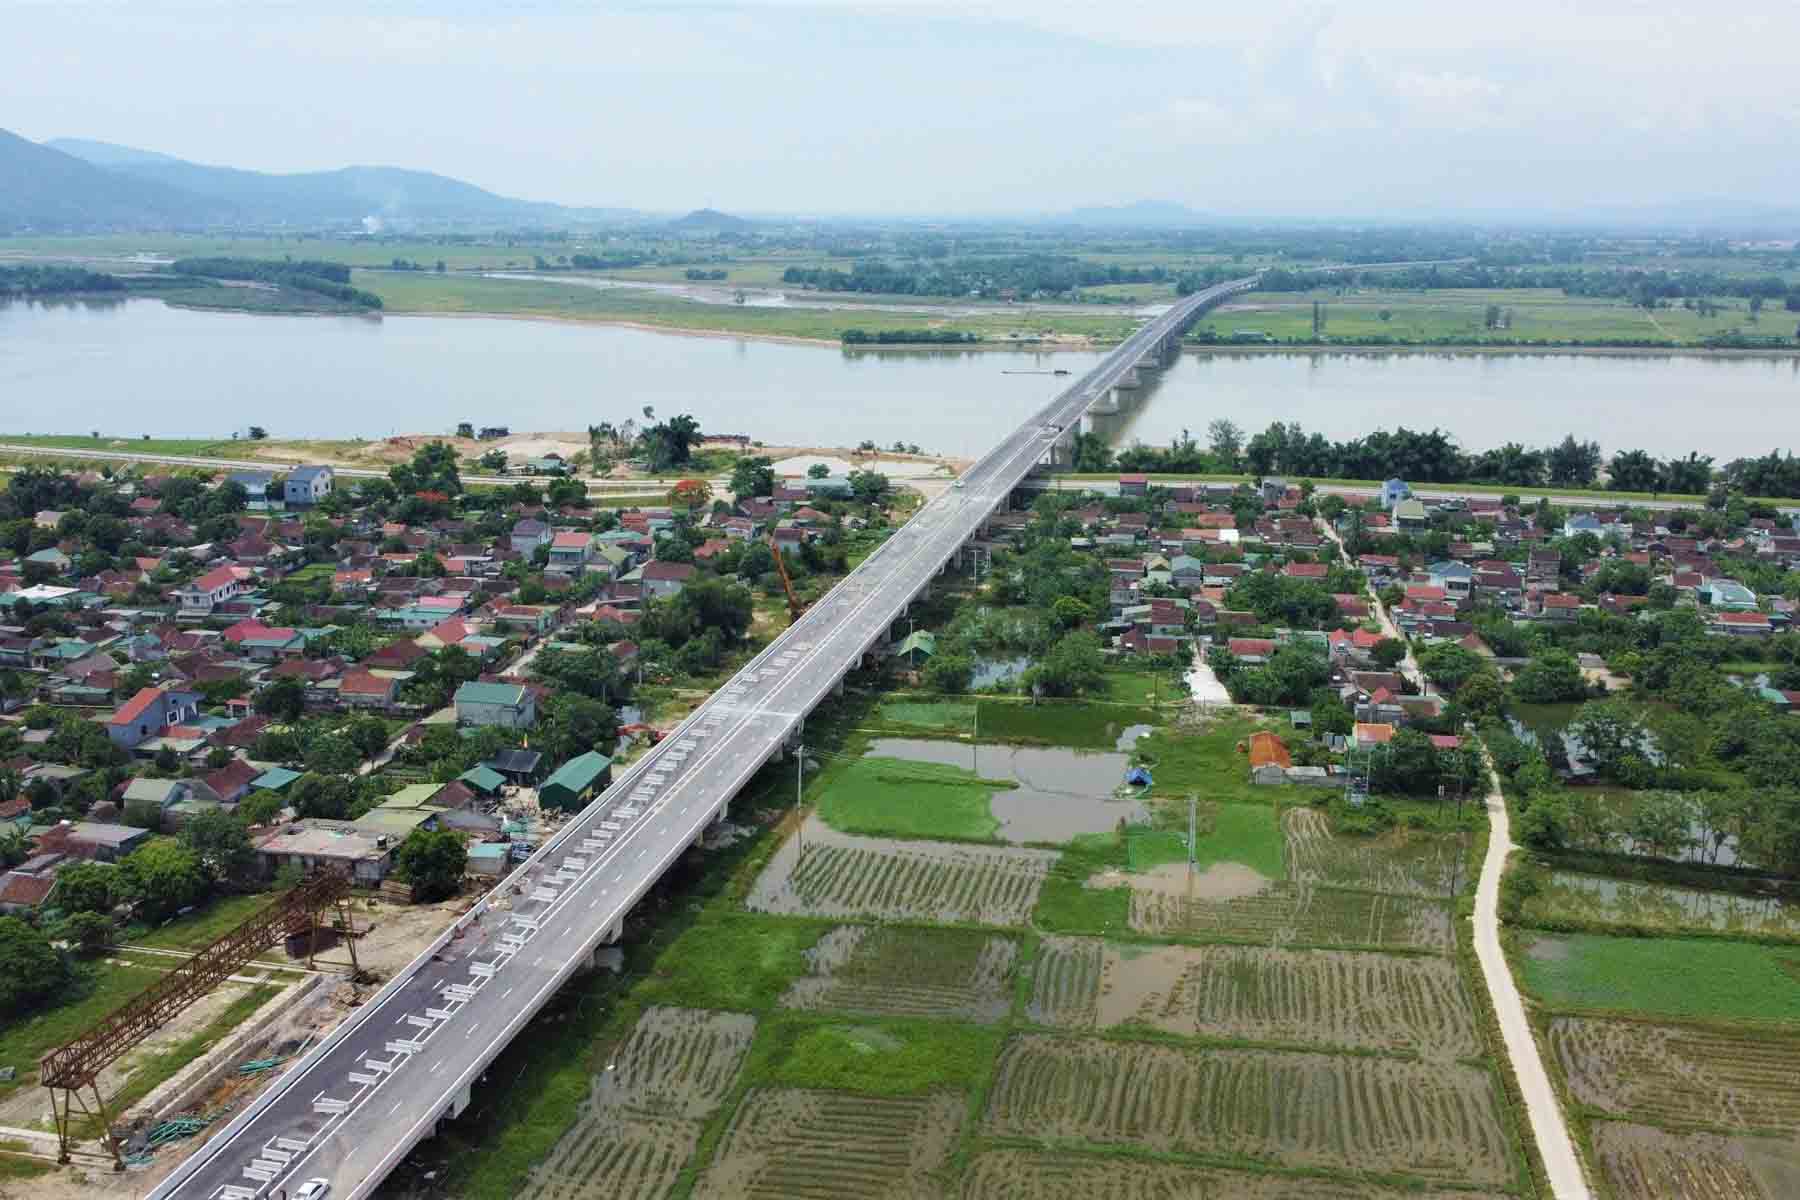 Cầu Hưng Đức không chỉ vượt sông Lam mà còn đi qua các bãi bồi, sông La, đê La Giang, khu dân cư, cánh đồng lúa với tổng chiều dài 4,036km. Ảnh: Trần Tuấn.